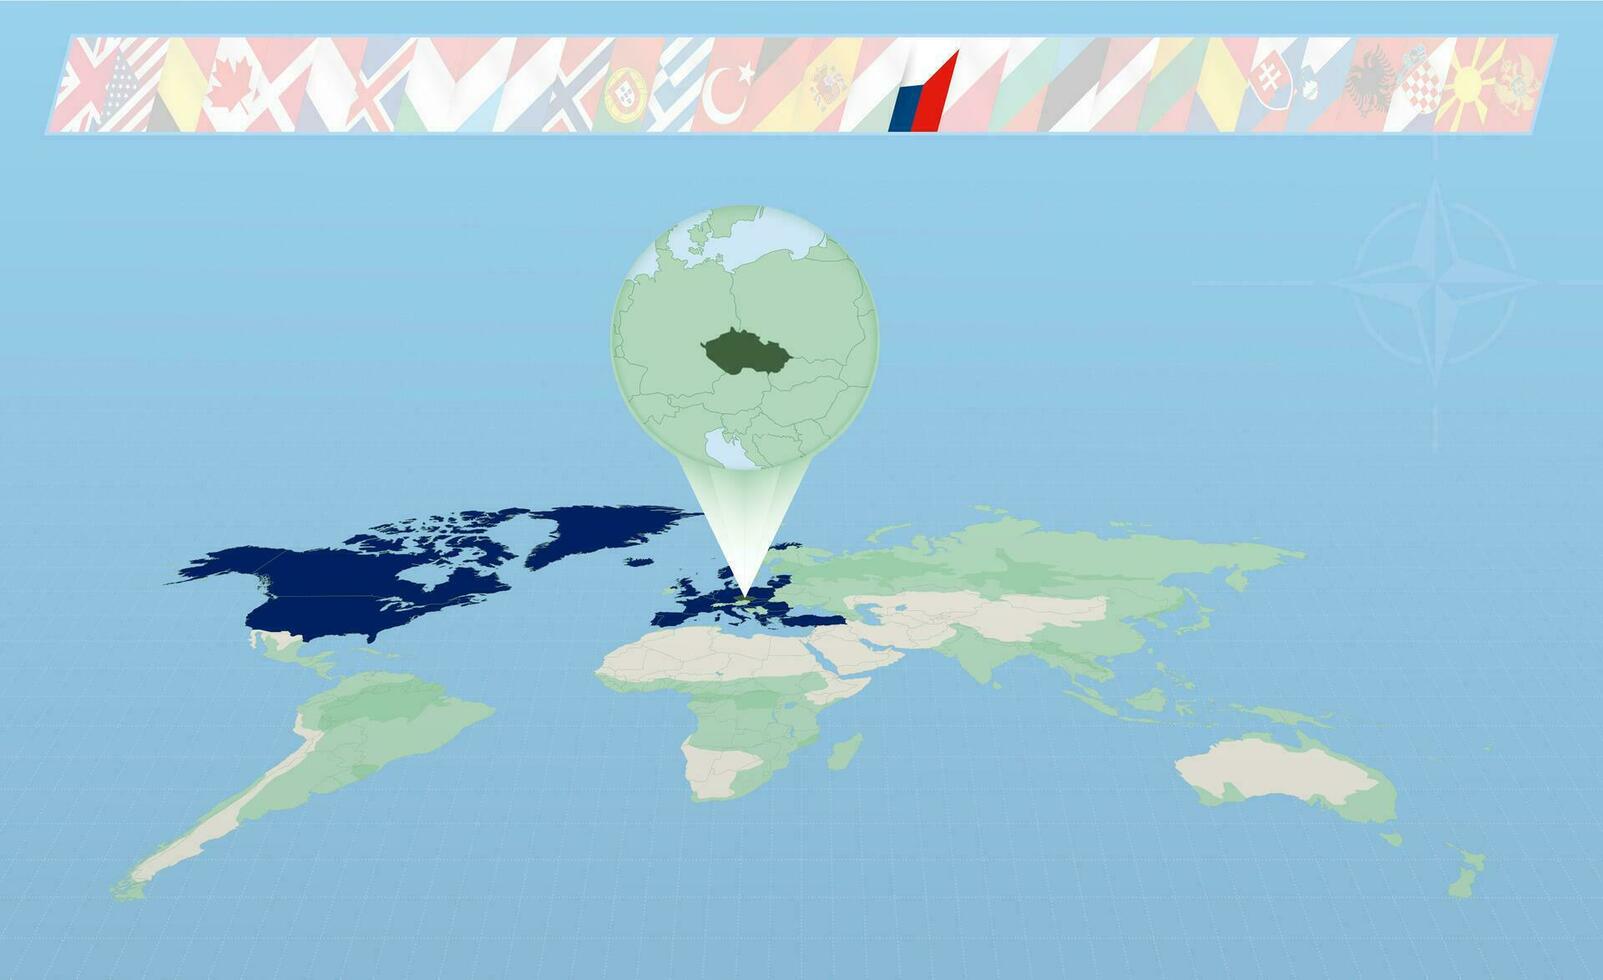 tcheco república membro do norte atlântico aliança selecionado em perspectiva mundo mapa. bandeiras do 30 membros do aliança. vetor